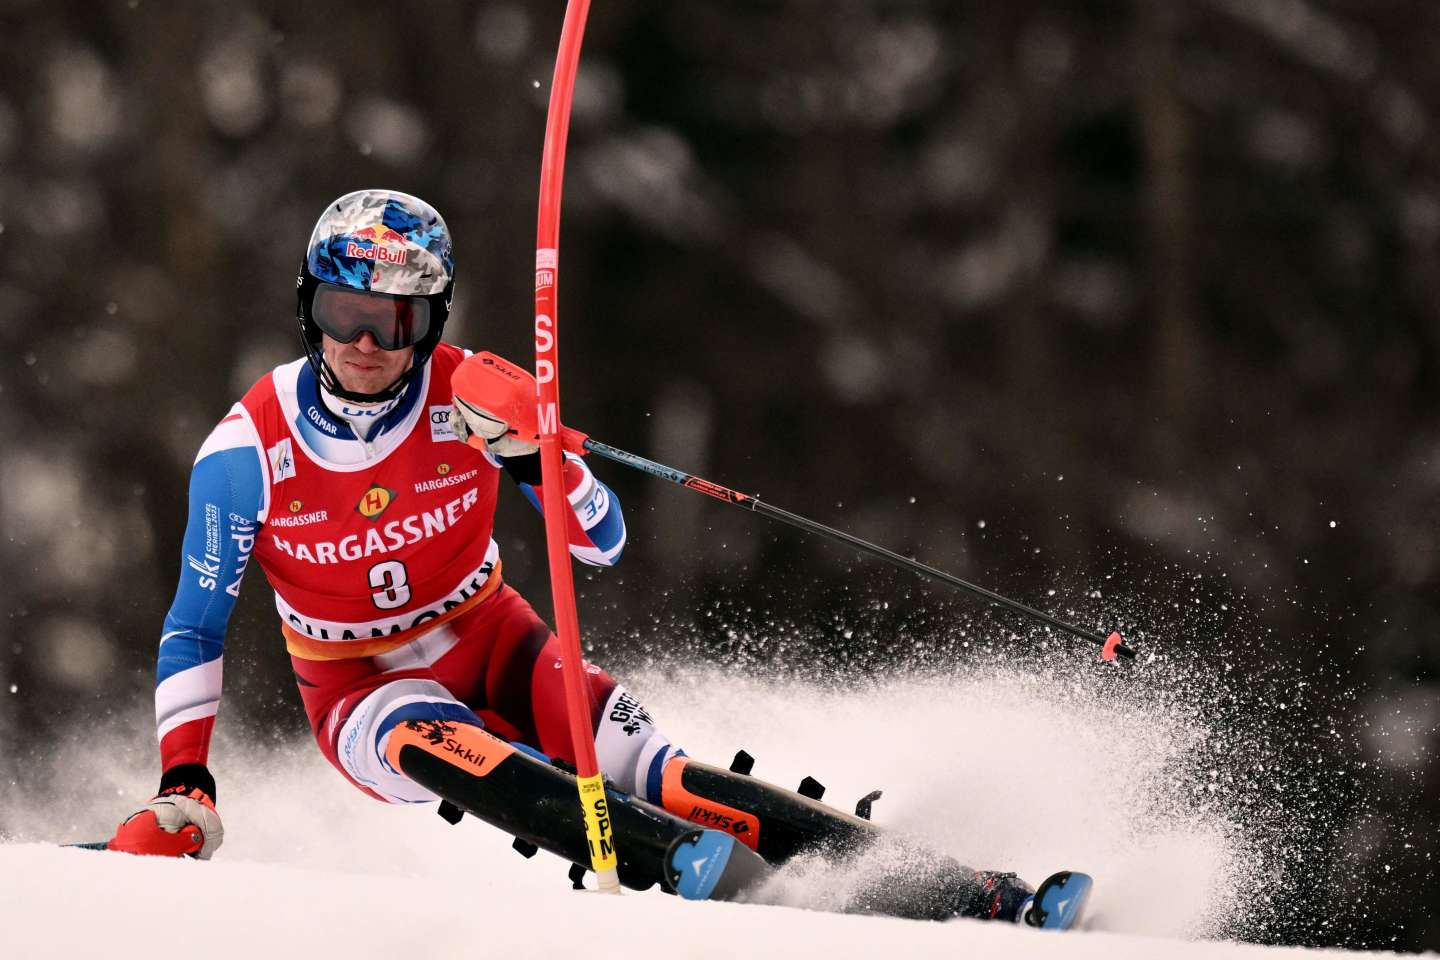 Ski alpin : un abandon et des motifs d’espoirs pour Clément Noël à Chamonix, juste avant les Mondiaux